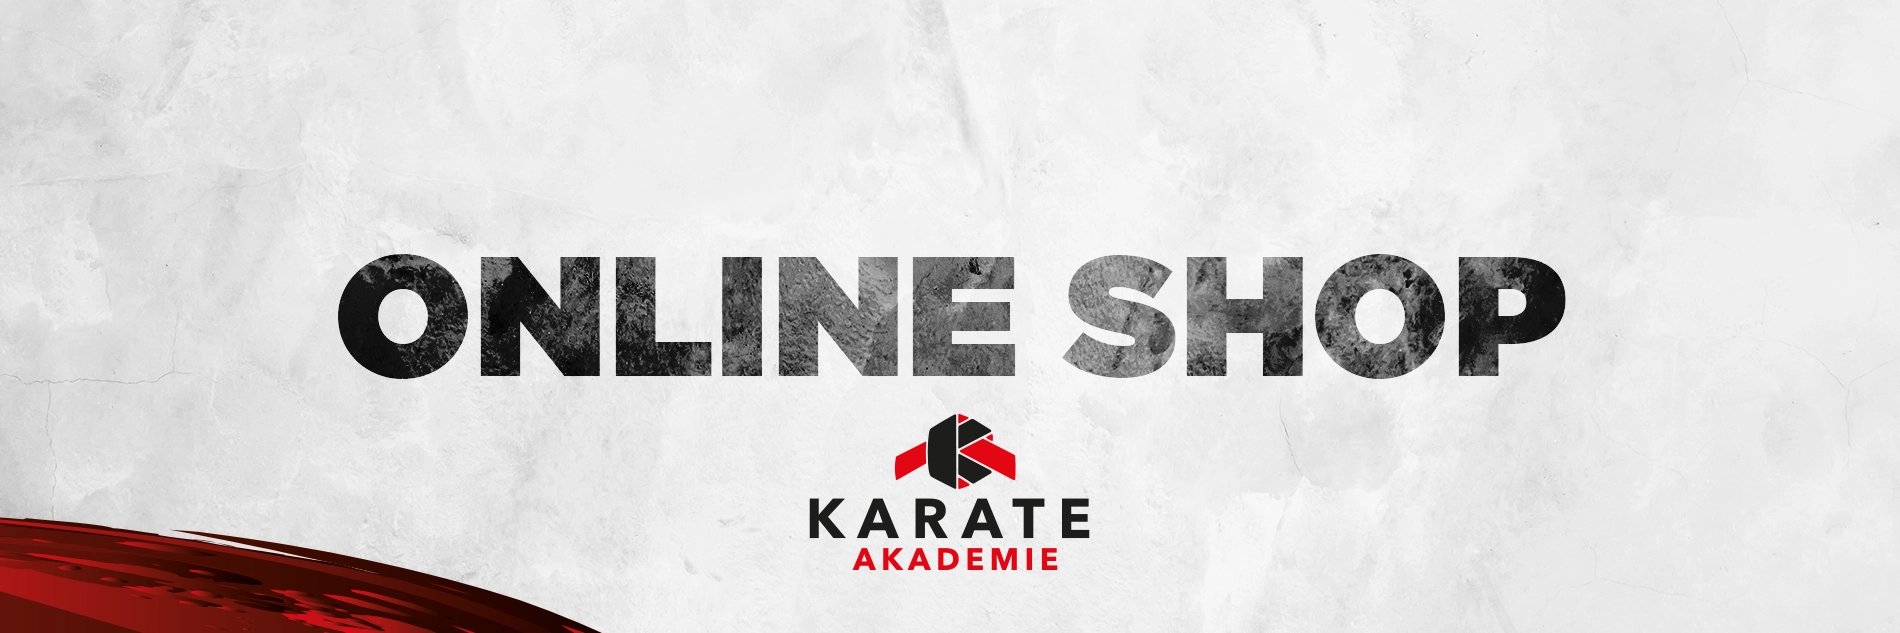 karate-akademie-burgrieden-online-shop-merchandise